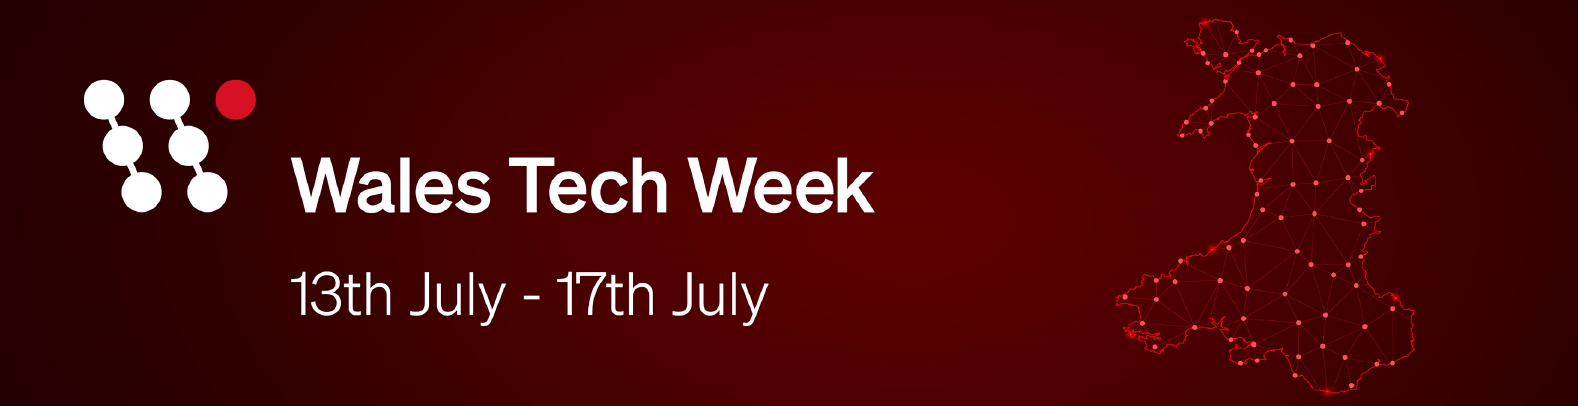 Wales Tech Week